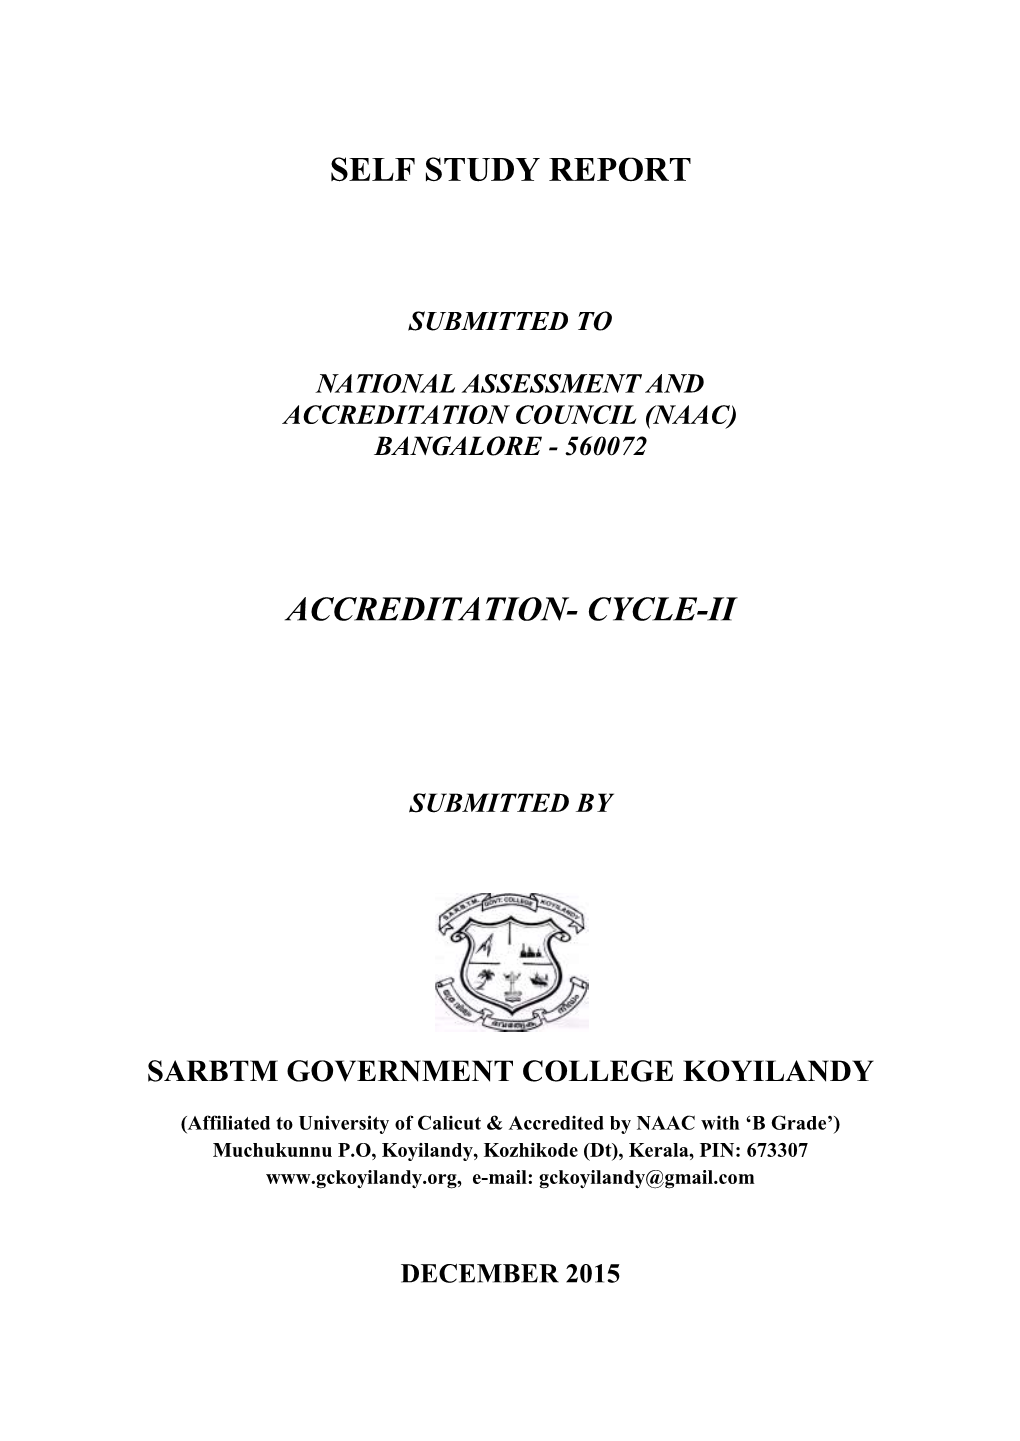 Self Study Report Accreditation- Cycle-Ii